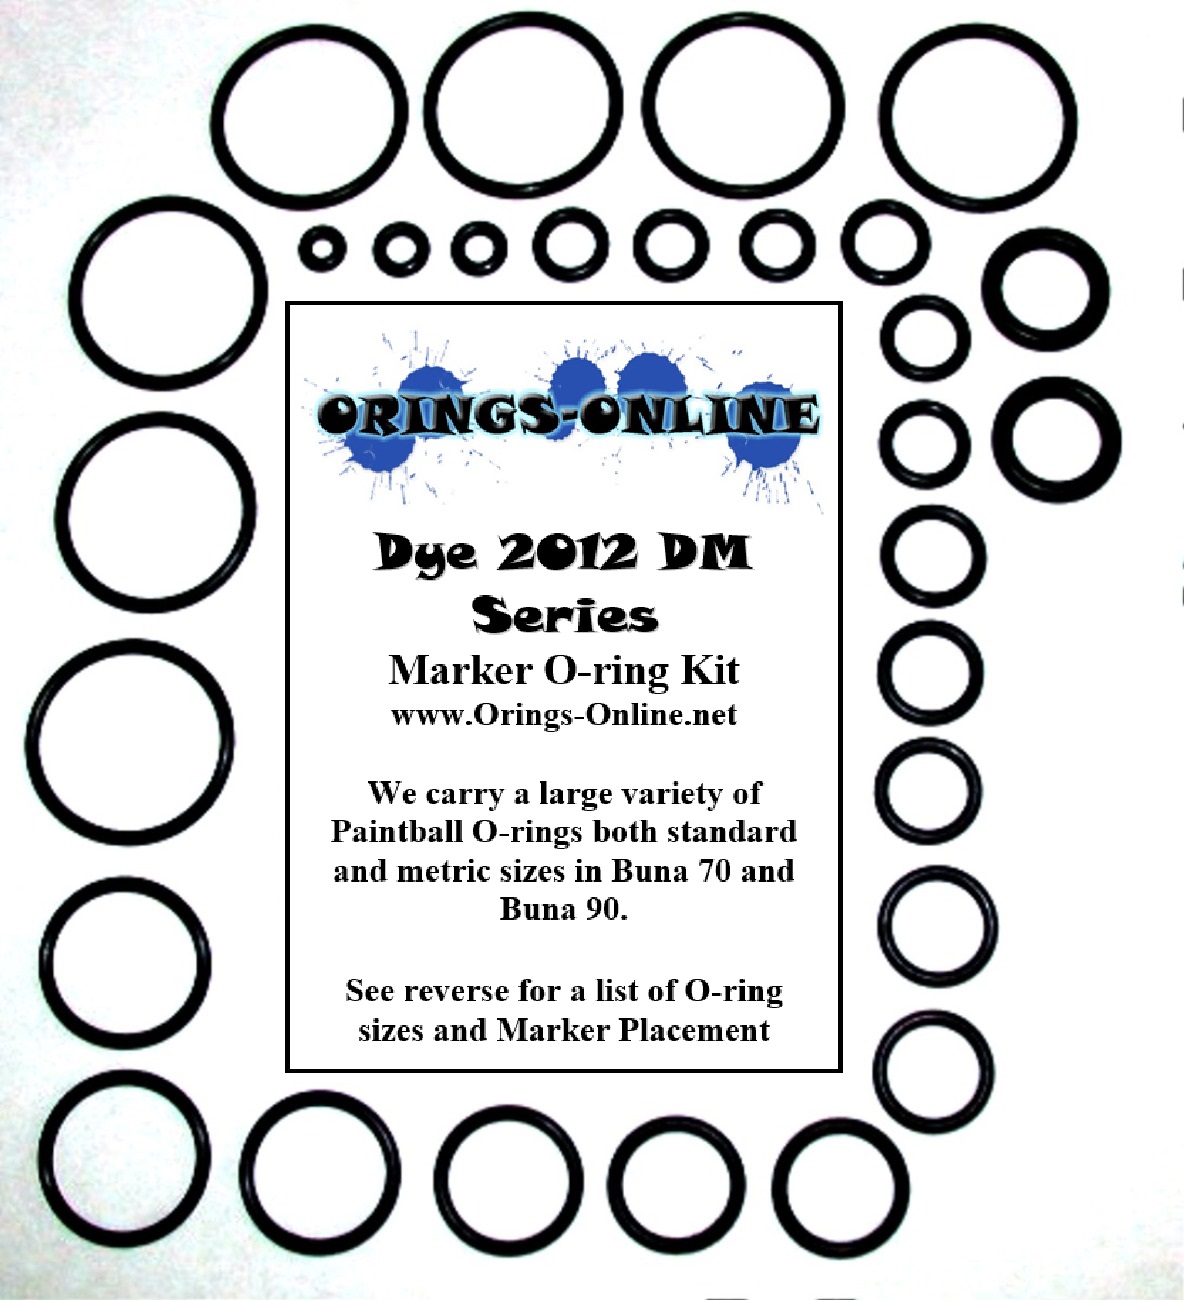 DYE 2012 DM Series Marker O-ring Kit